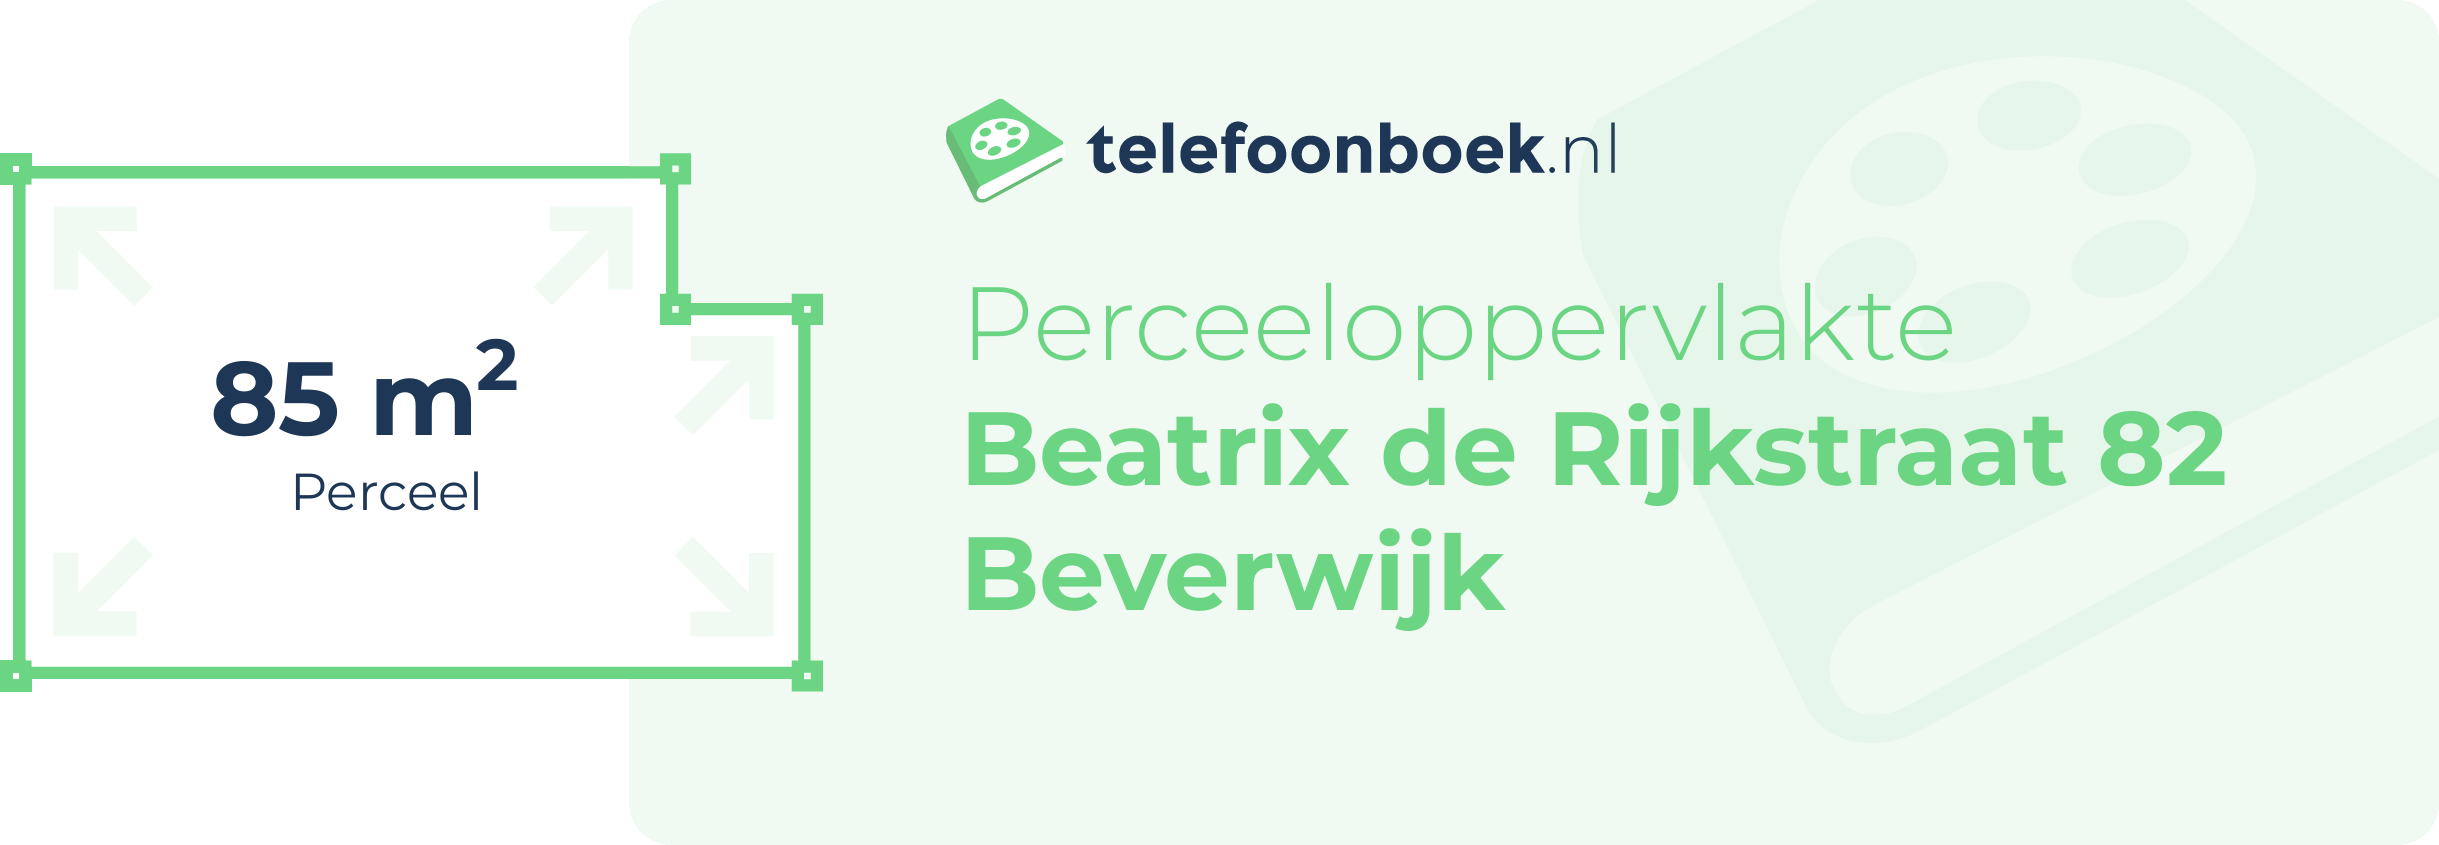 Perceeloppervlakte Beatrix De Rijkstraat 82 Beverwijk